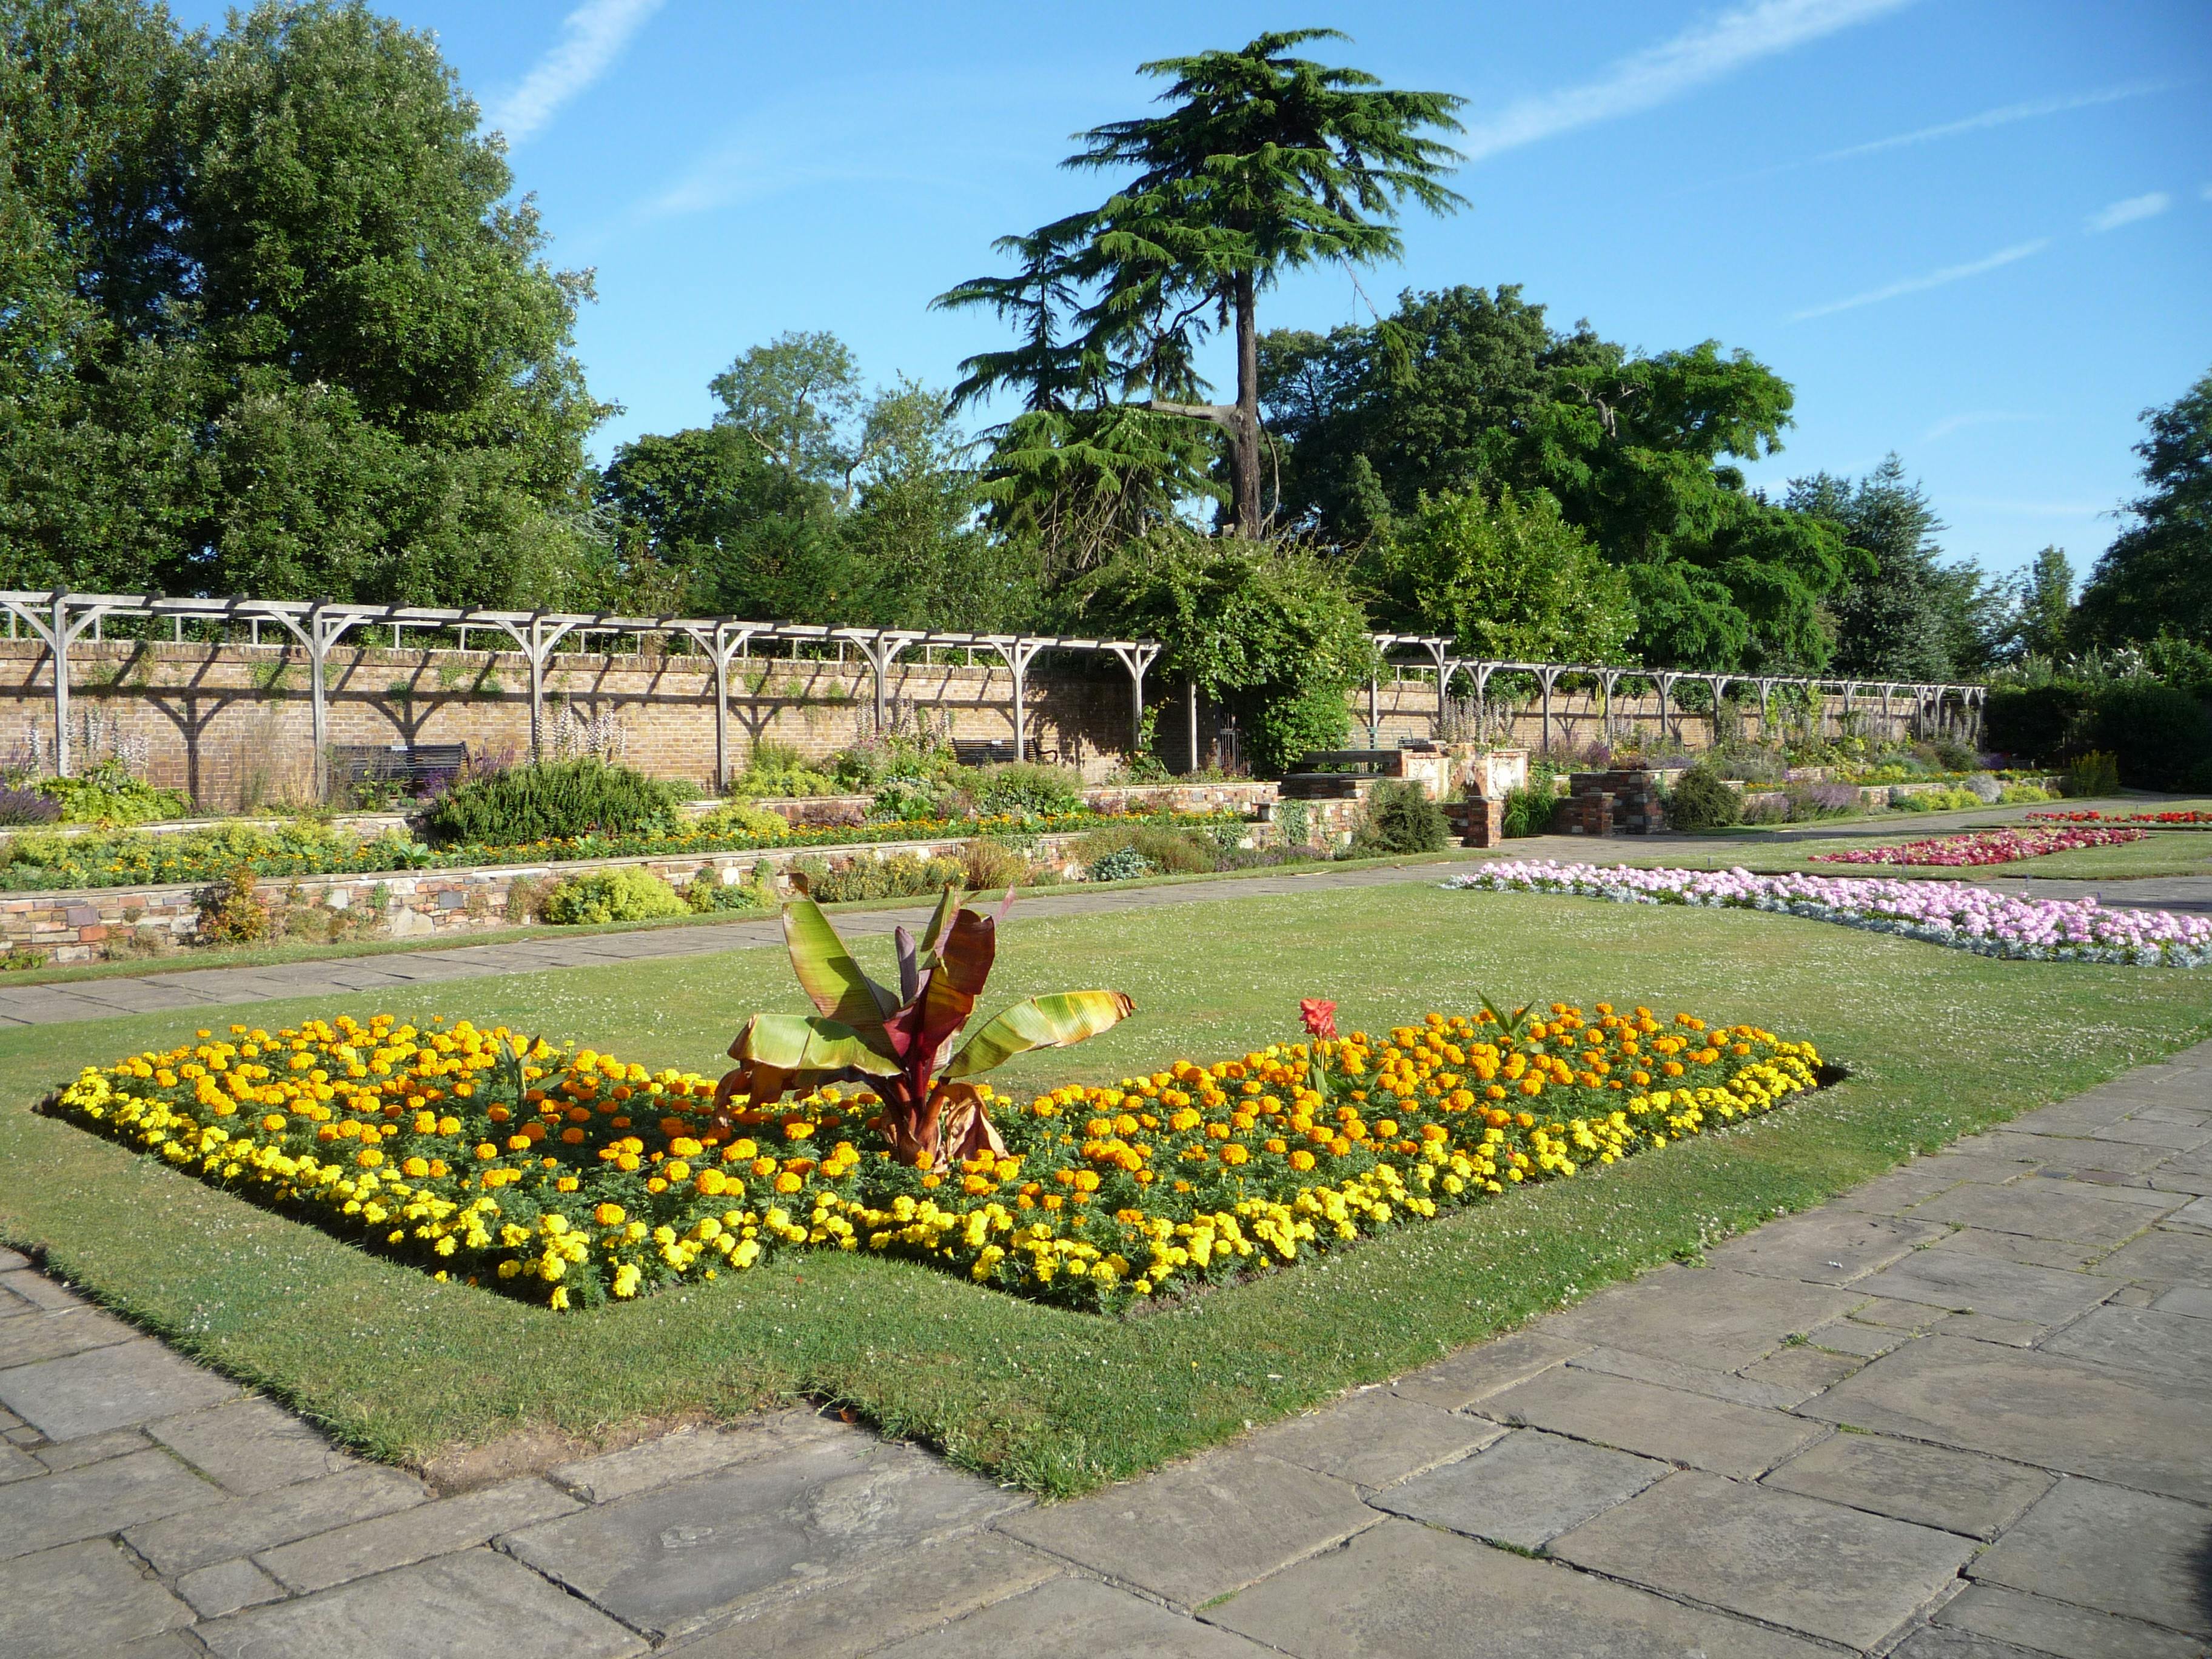 Priory Park Gardens